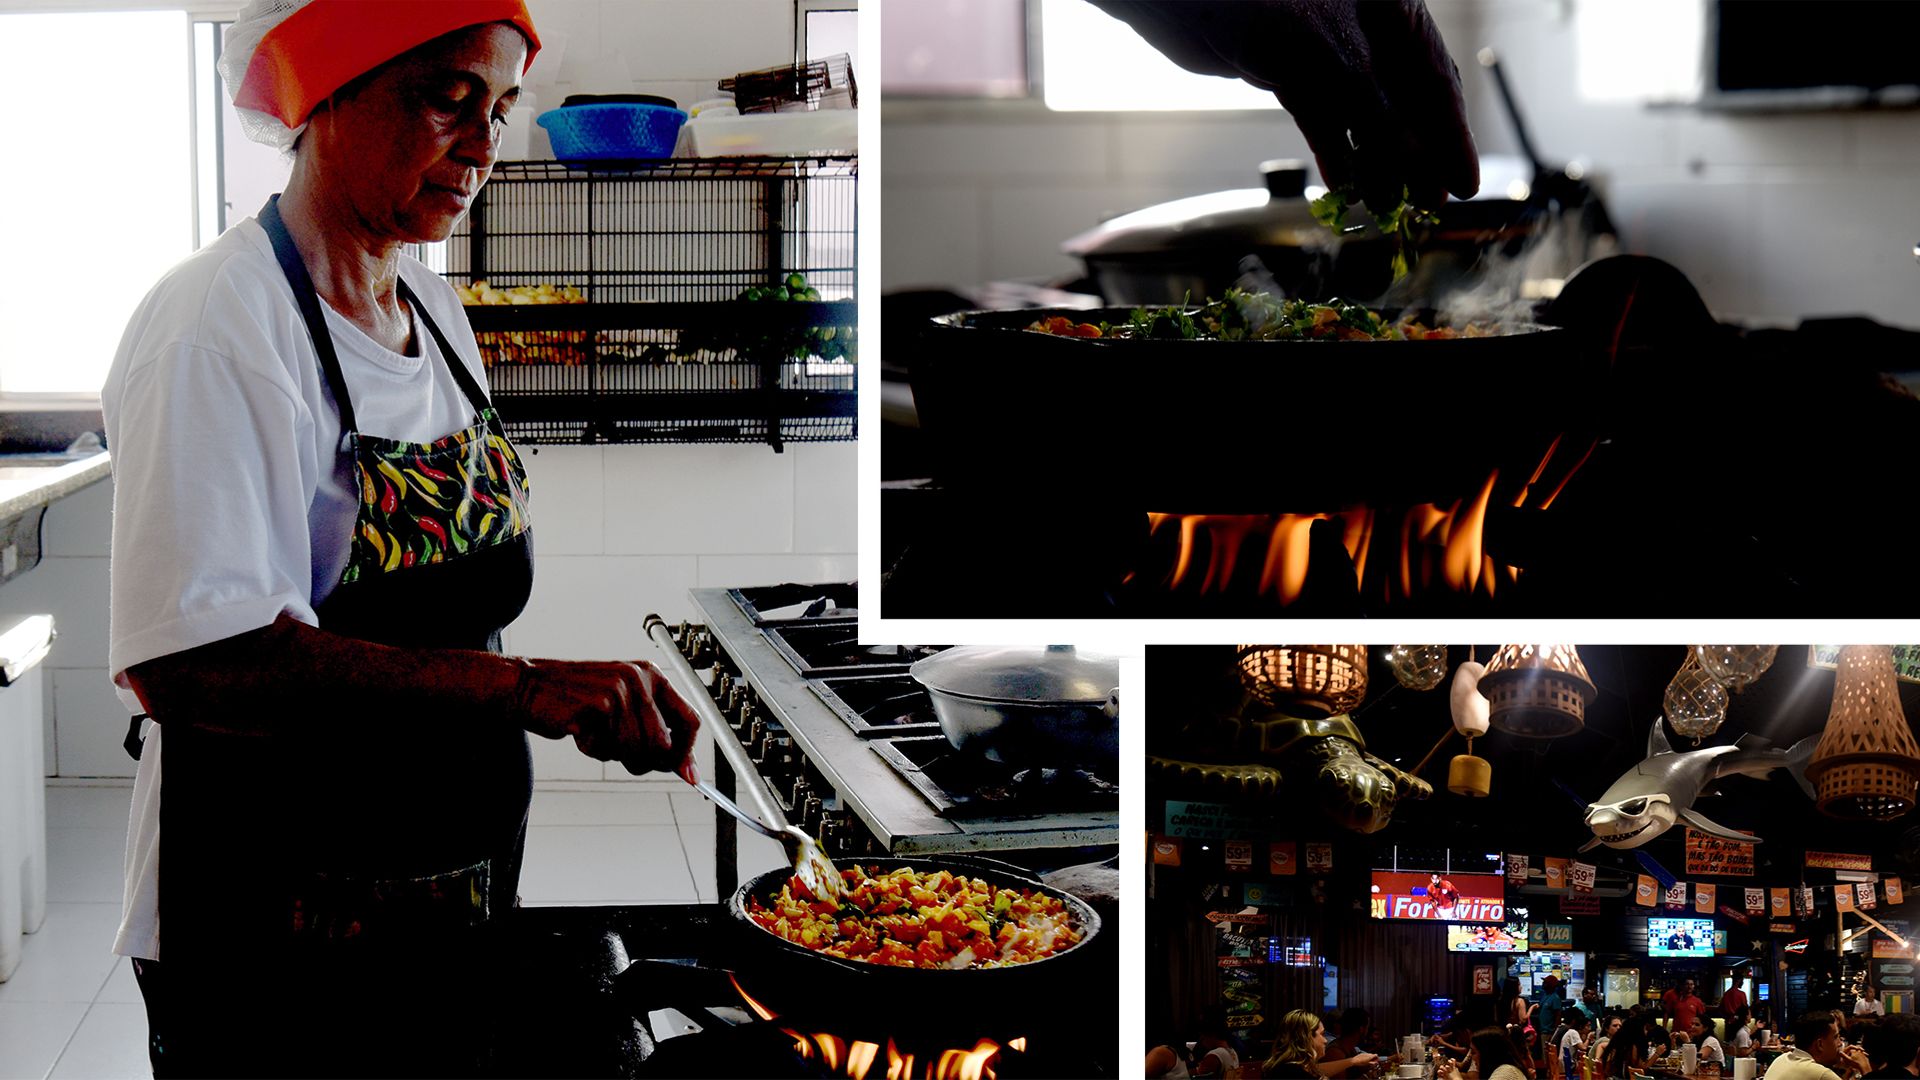 Data: 22/05/2020 - ES - Vitória - Moqueca de siri sendo preparada no restaurante da Ilha das Caieiras, em Vitória- Editoria: Cidades -